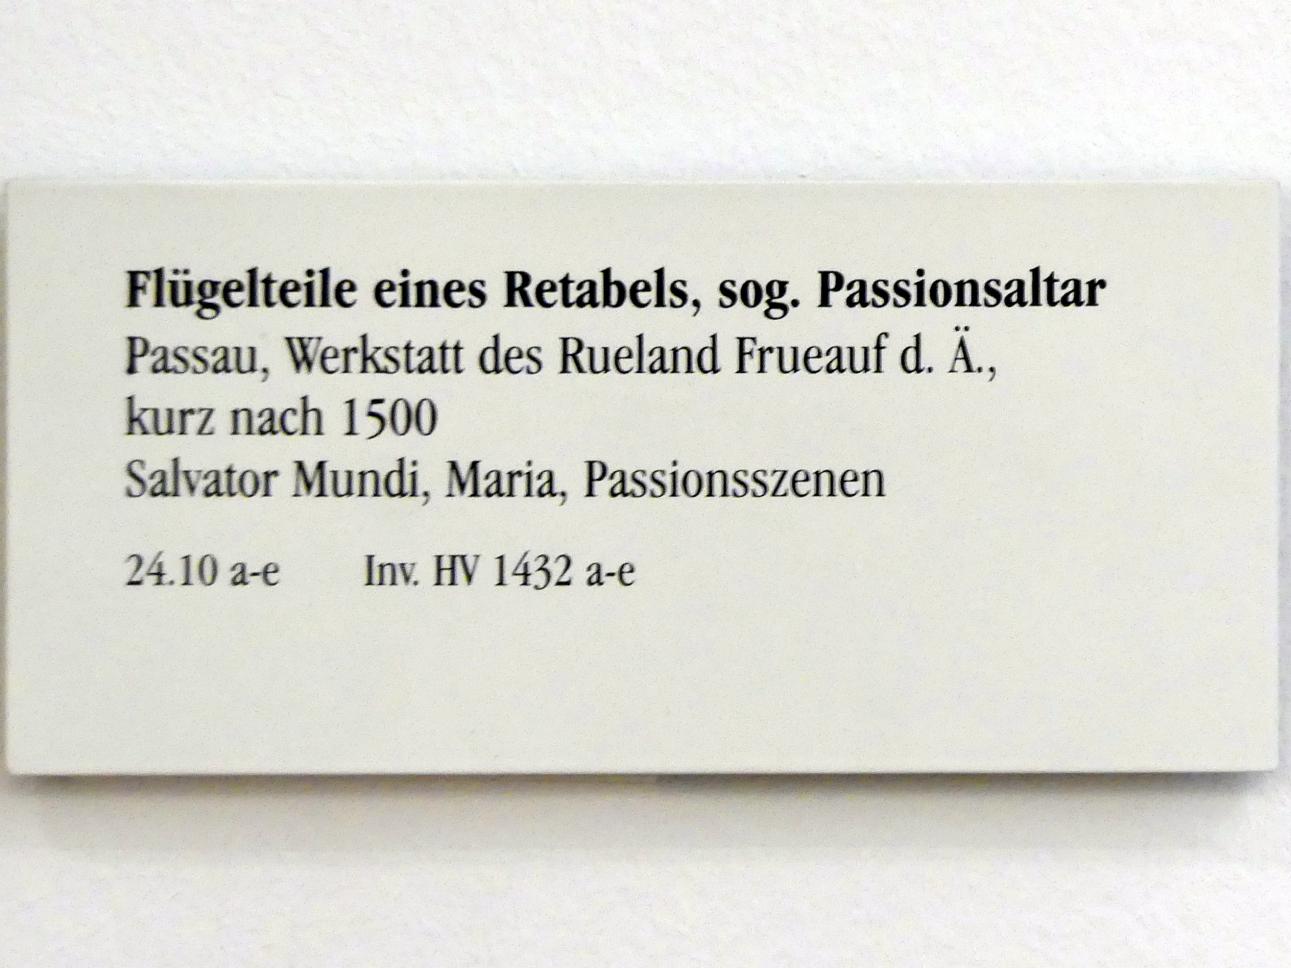 Rueland Frueauf der Ältere (1490–1501), Flügelteile enes Retabels, sog. Passionsaltar, Regensburg, Historisches Museum, nach 1500, Bild 3/3